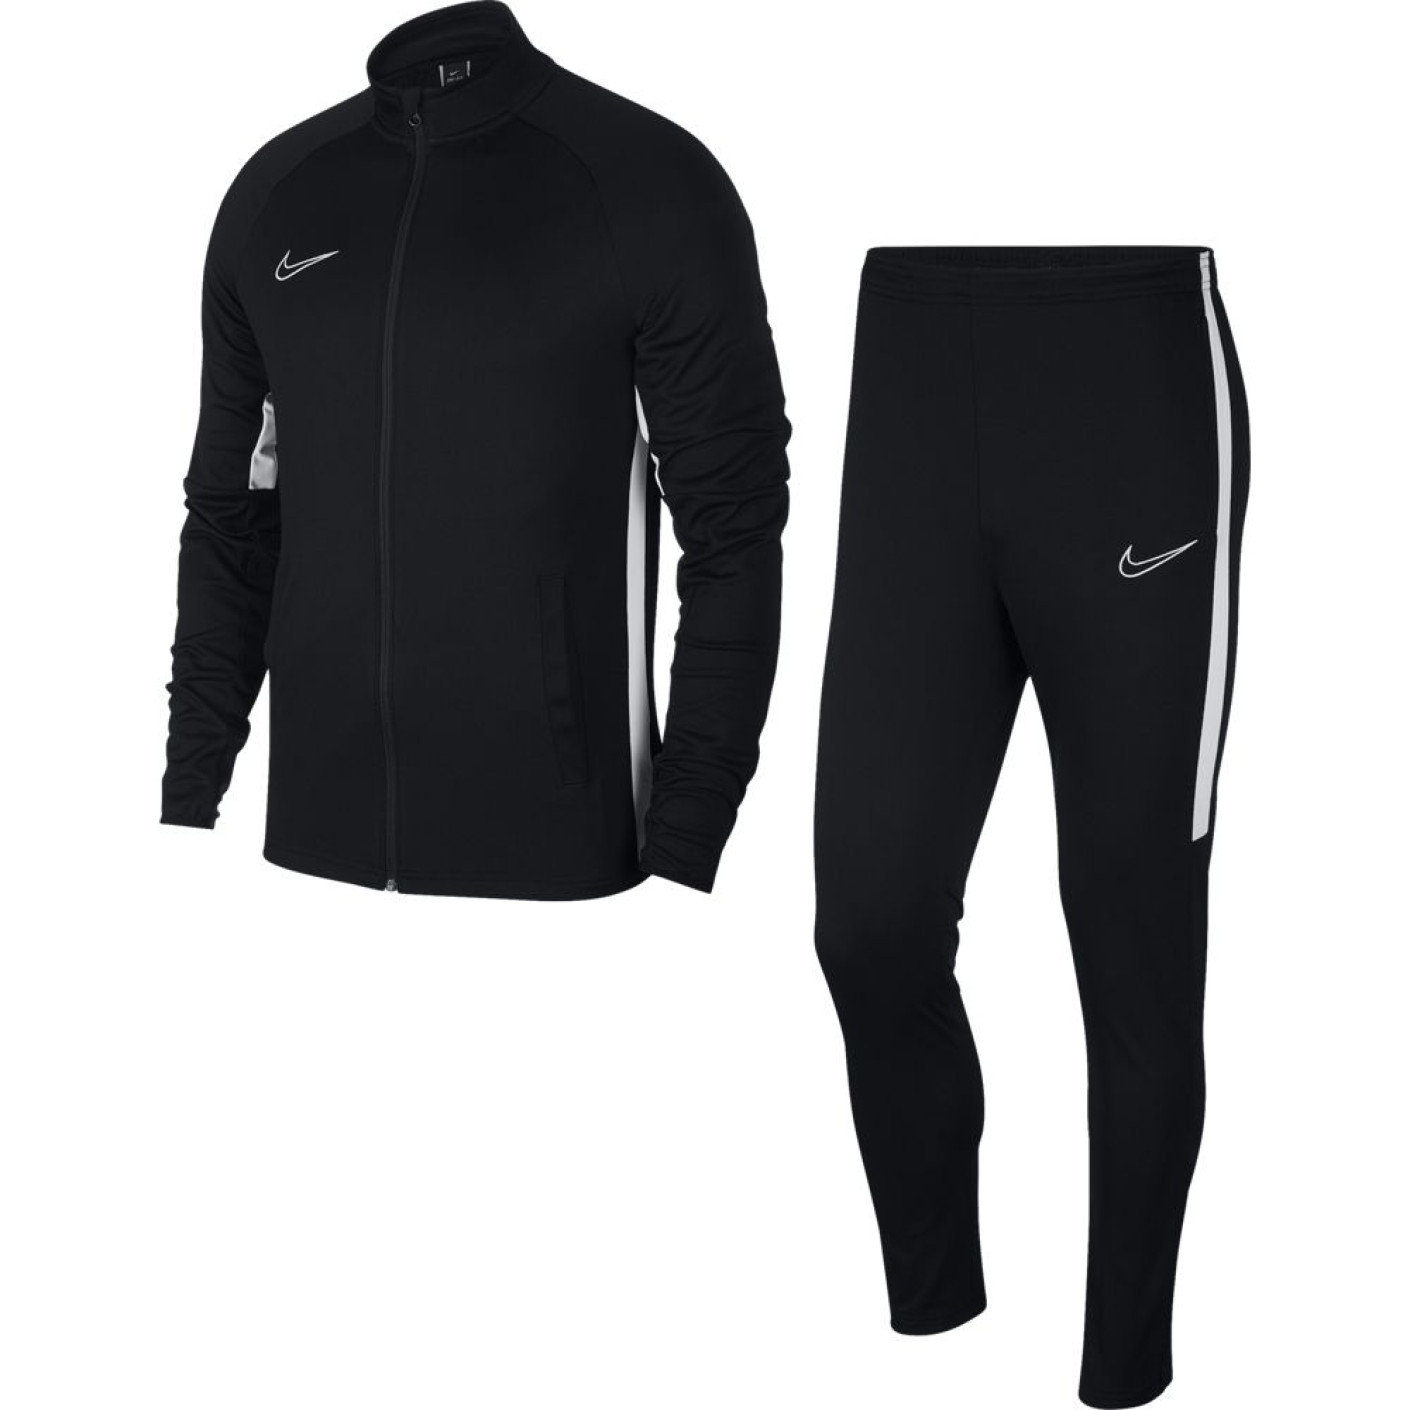 Nike Dry Academy Trainingspak Zwart Wit